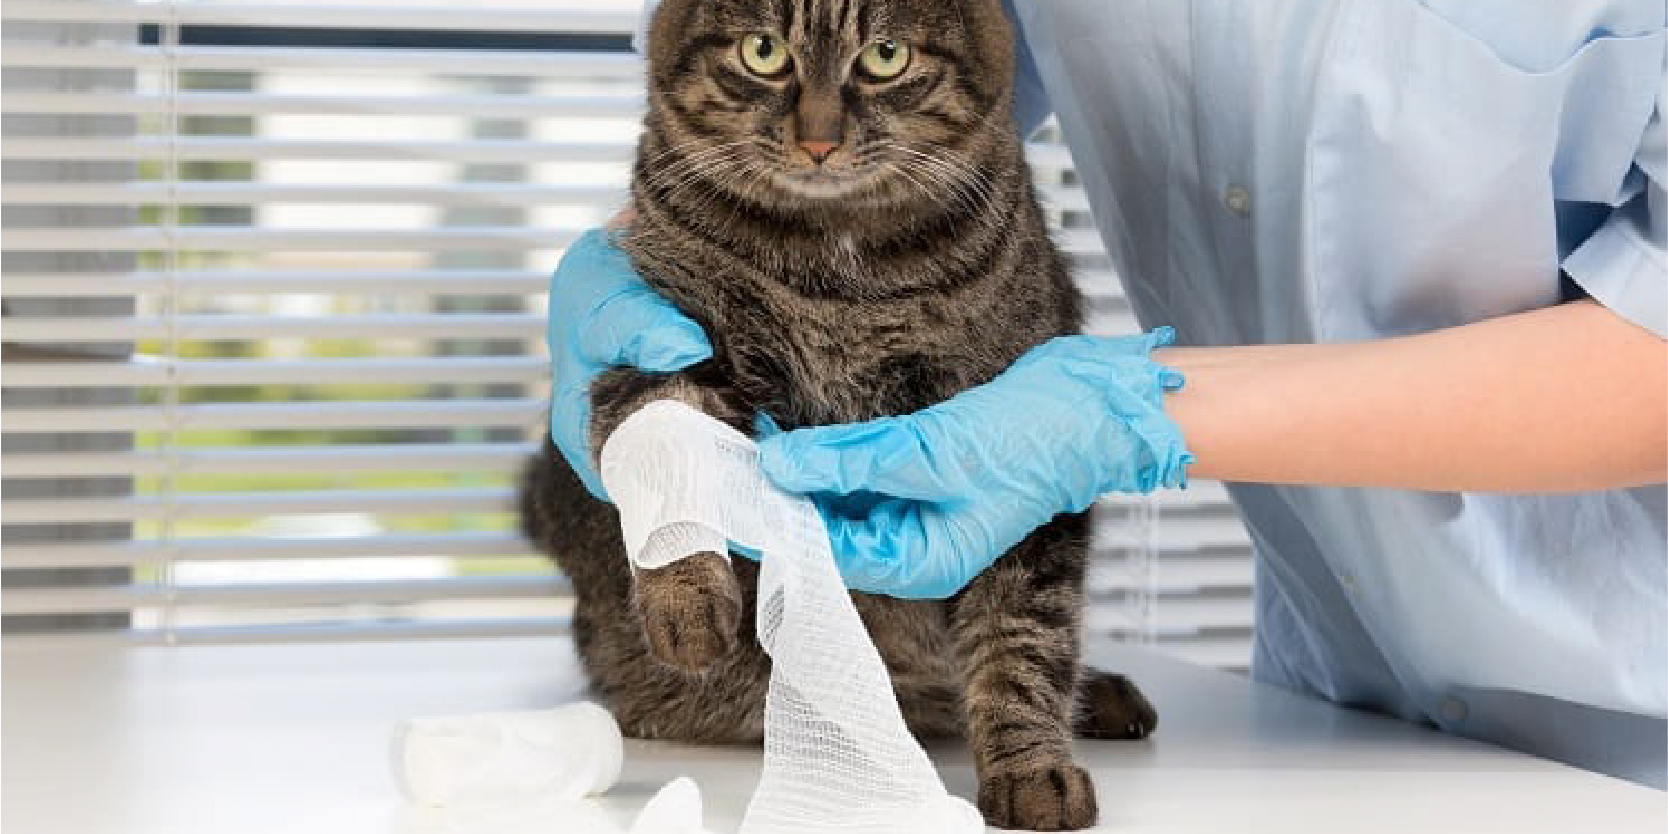 Khi mèo của bạn bị đau chân thì hãy đưa đi thăm khám bác sĩ thú y để chữa trị kịp thời